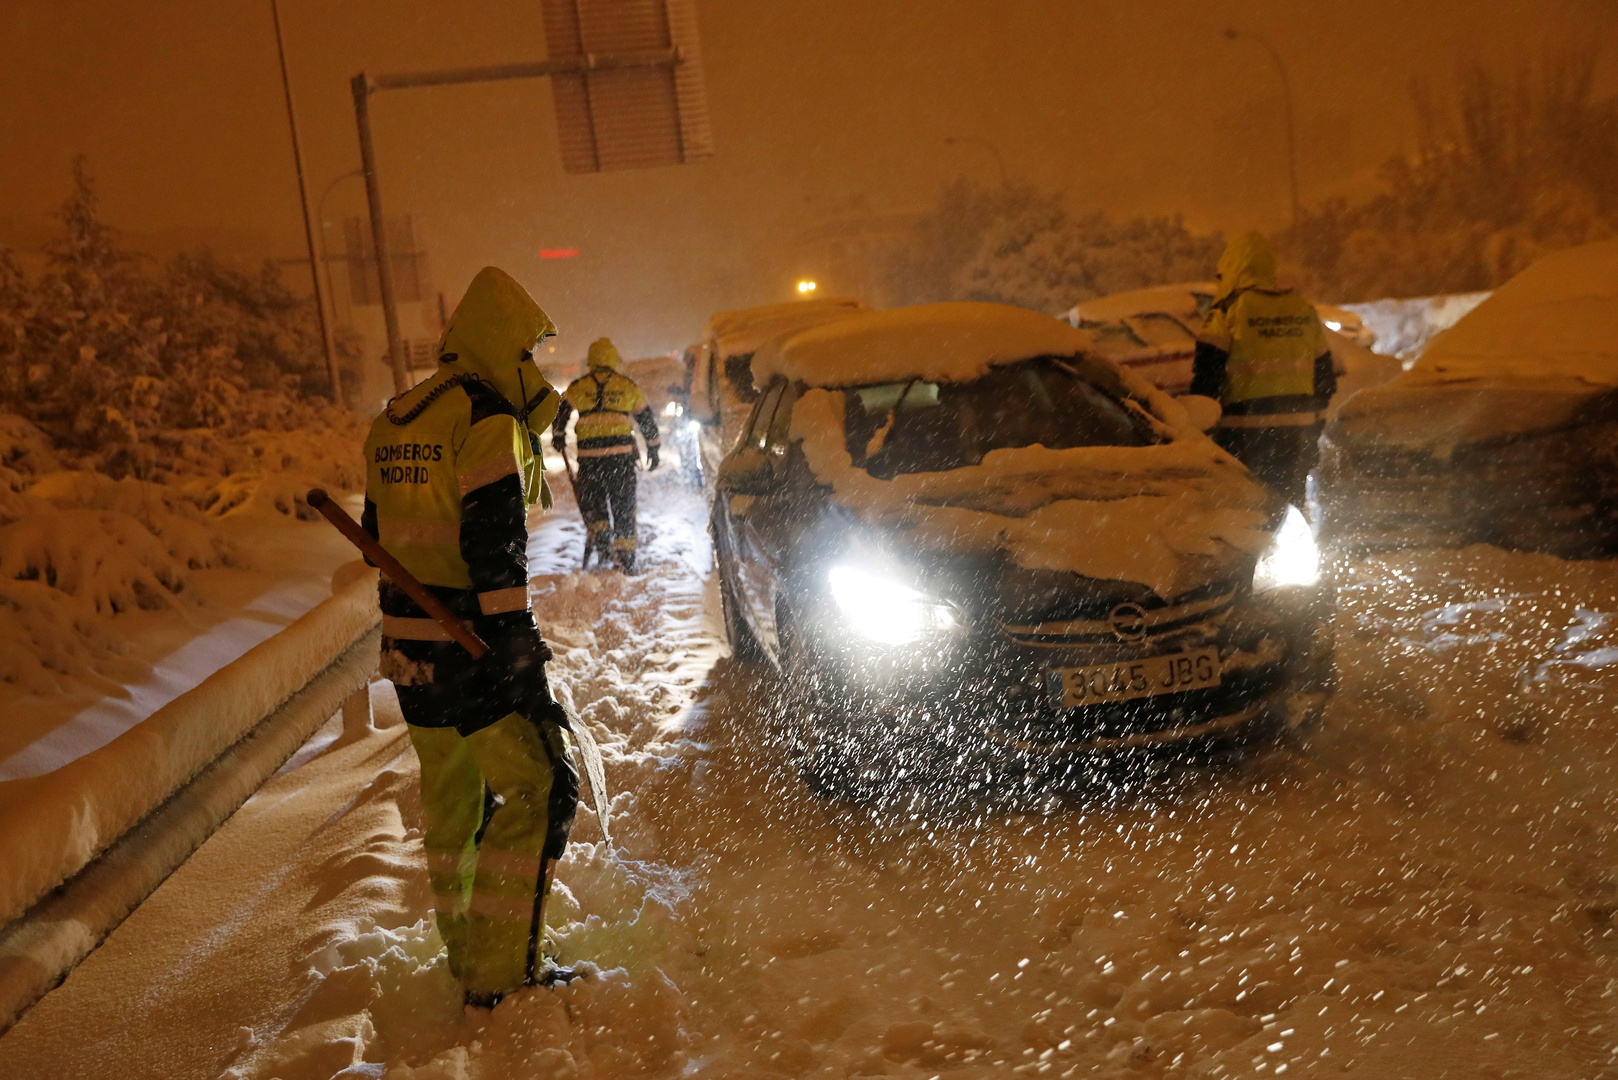 العاصفة الثلجية في إسبانيا تتسبب بمصرع شخصين واحتجاز العديد في سياراتهم